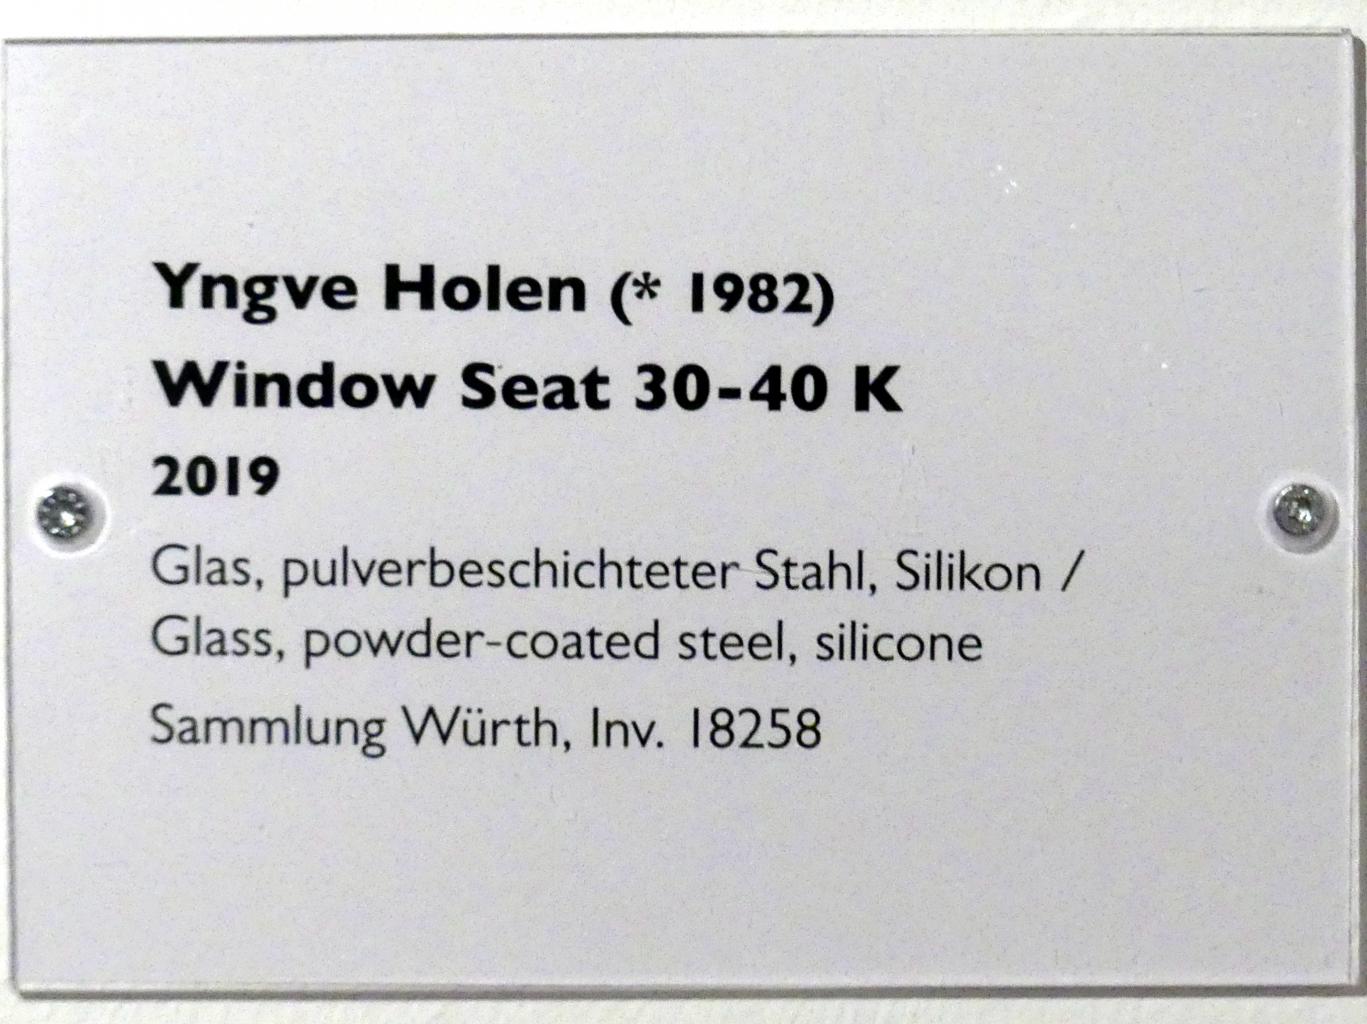 Yngve Holen (2019), Window Seat 30-40 K, Schwäbisch Hall, Kunsthalle Würth, Ausstellung "Lust auf mehr" vom 30.09.2019 - 20.09.2020, Erdgeschoss, 2019, Bild 8/8